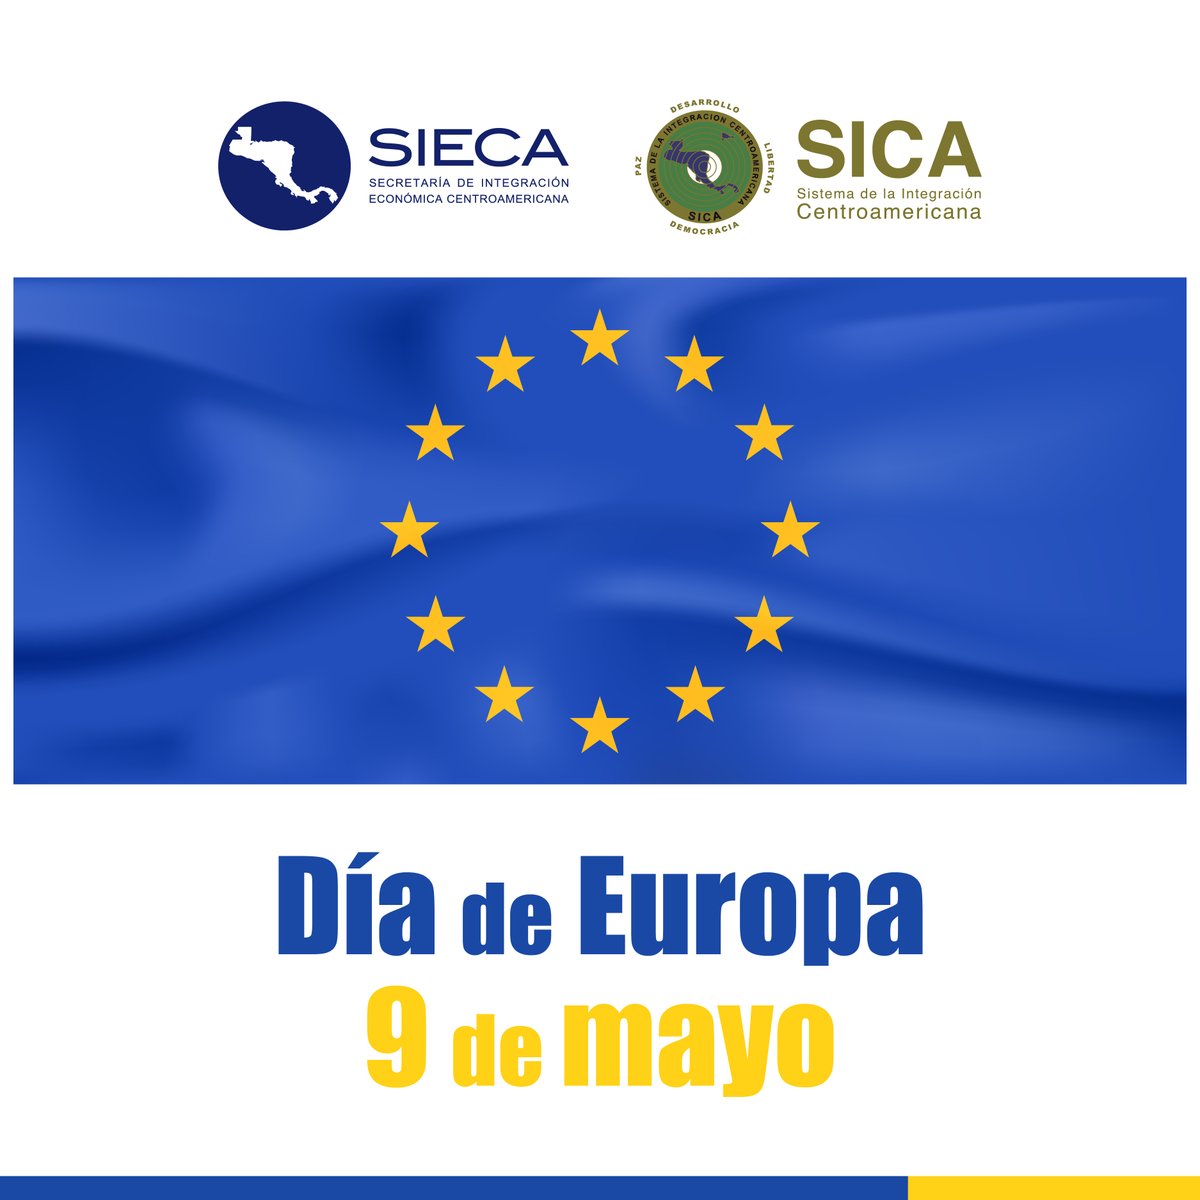 🇪🇺 ¡Feliz Día de Europa! 🇪🇺 Hoy 0⃣9⃣ de mayo, conmemoramos la histórica Declaración Schuman que sentó las bases de la integración europea. La SIECA se une a esta celebración y envía un cálido saludo a las delegaciones de la Unión Europea en Centroamérica. #UEenCentroamerica